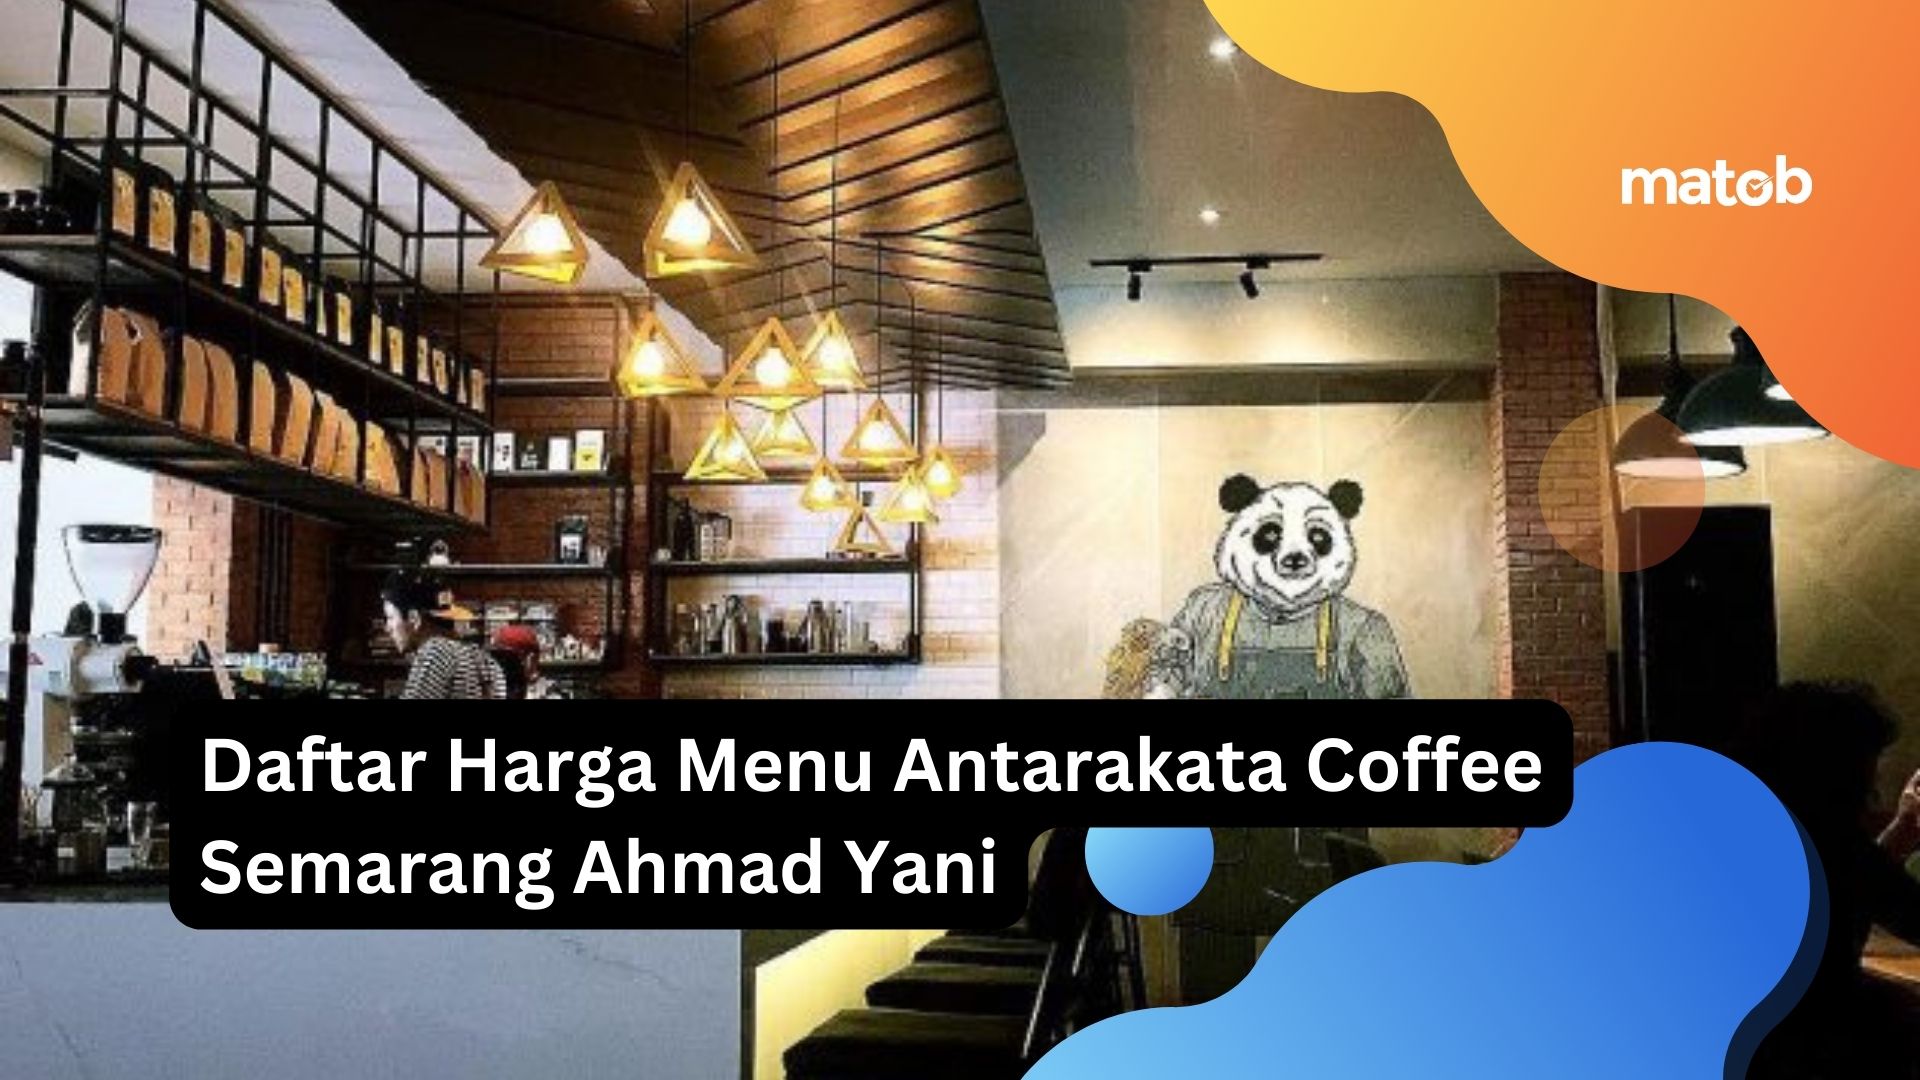 Daftar Harga Menu Antarakata Coffee Semarang Ahmad Yani